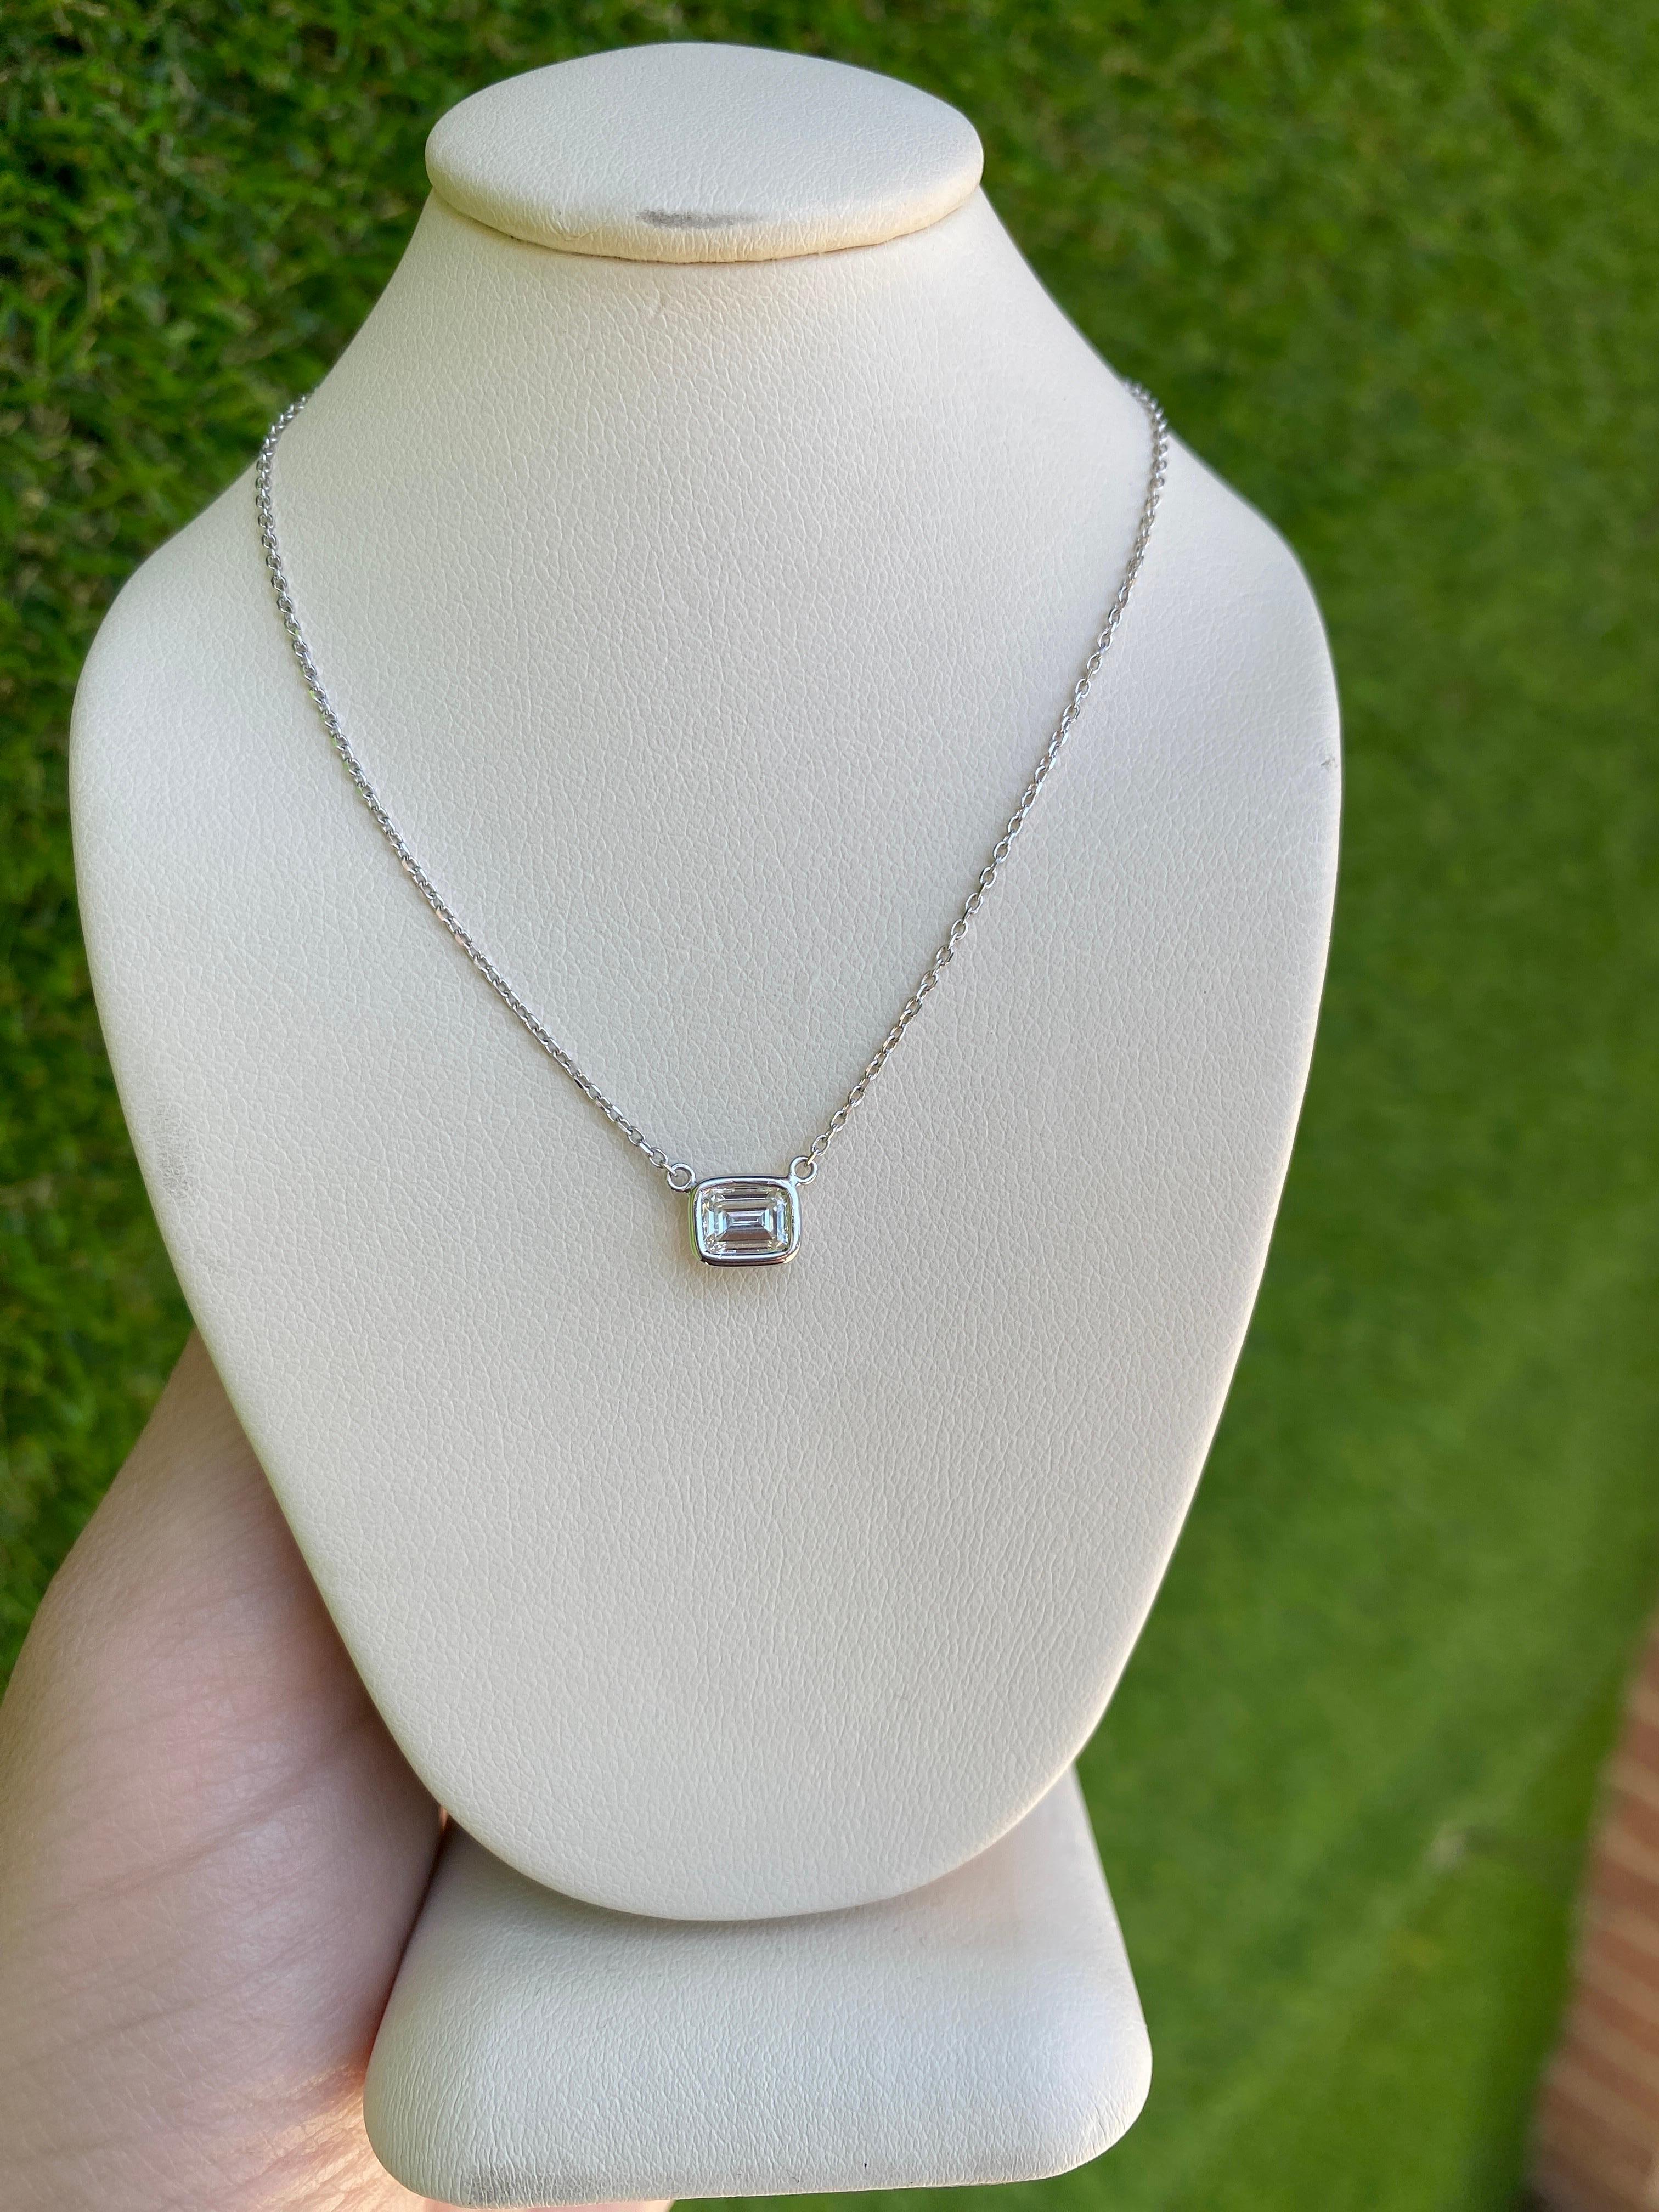 0.44 Carat Natural Emerald Cut Bezel Set Diamond Pendant Necklace 14k White Gold For Sale 12